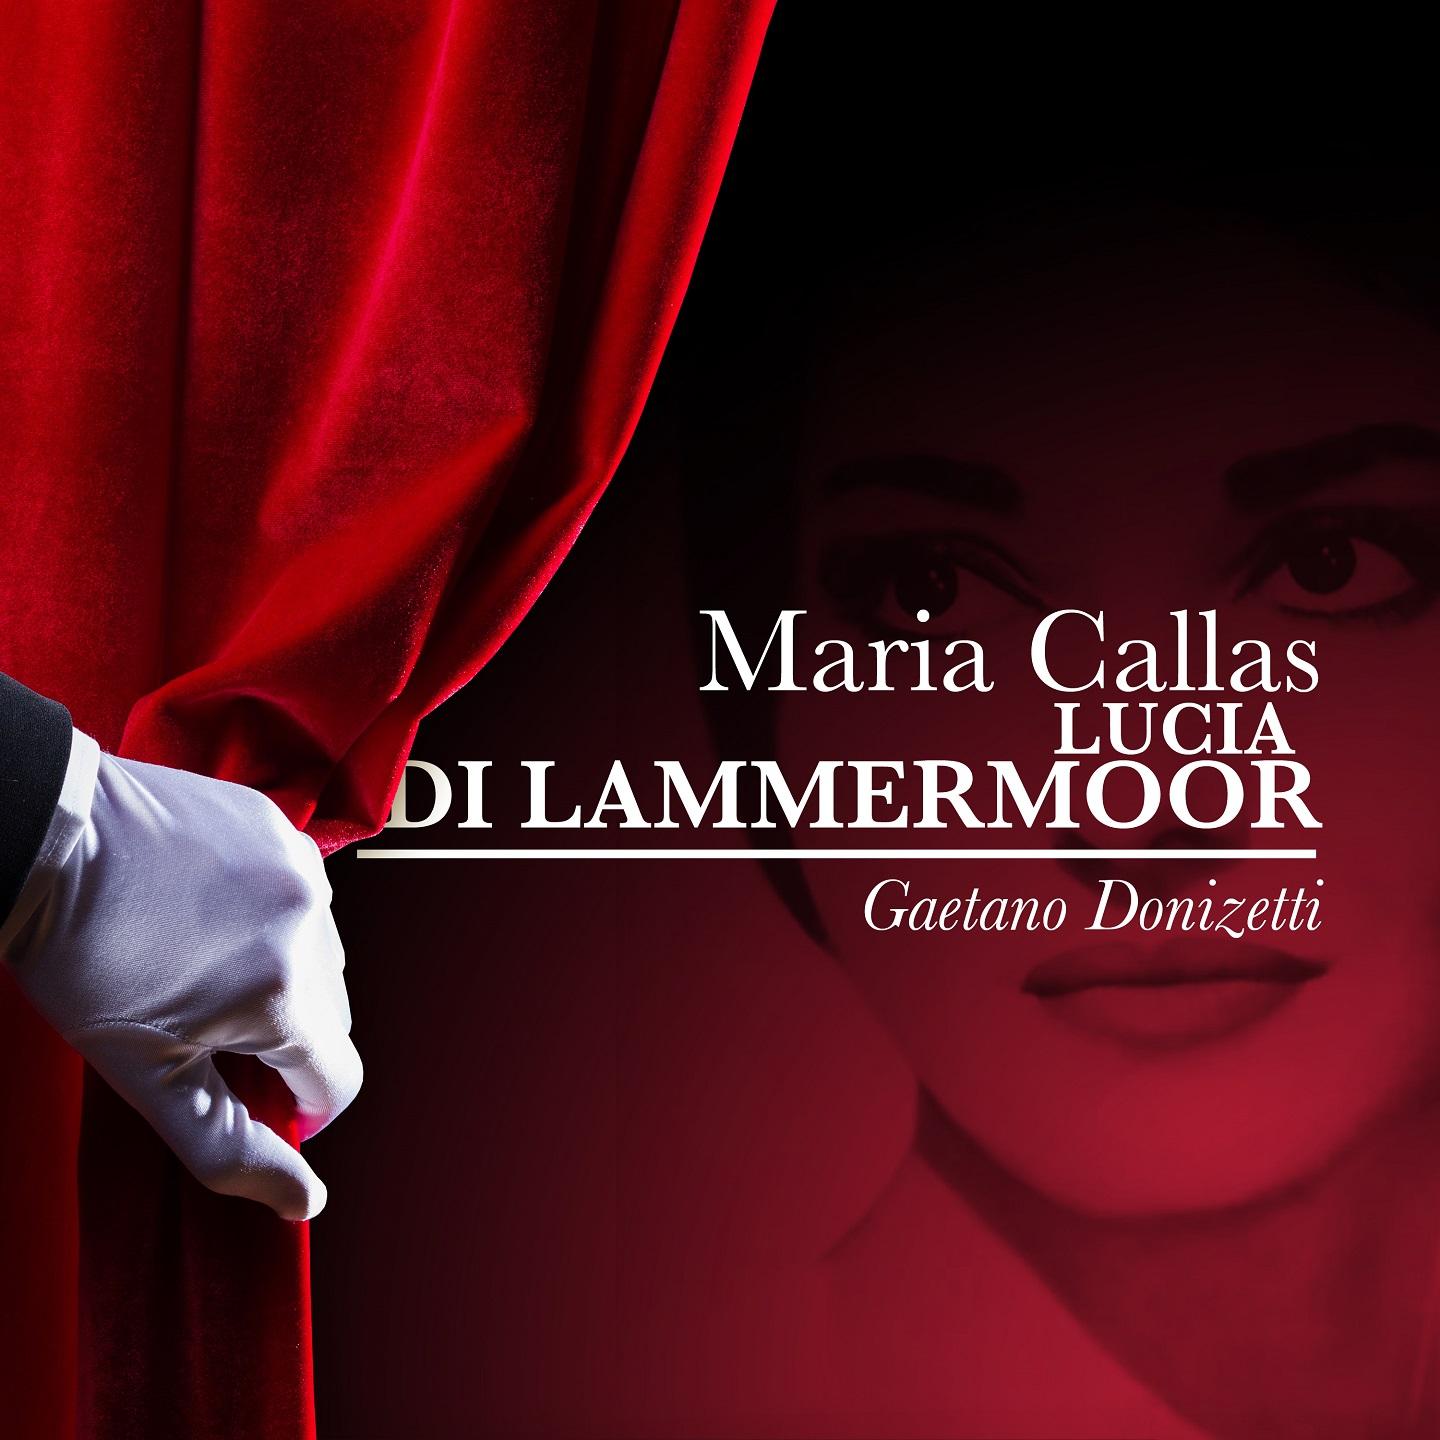 Maria callas: lucia di lammermoor - gaetano donizetti